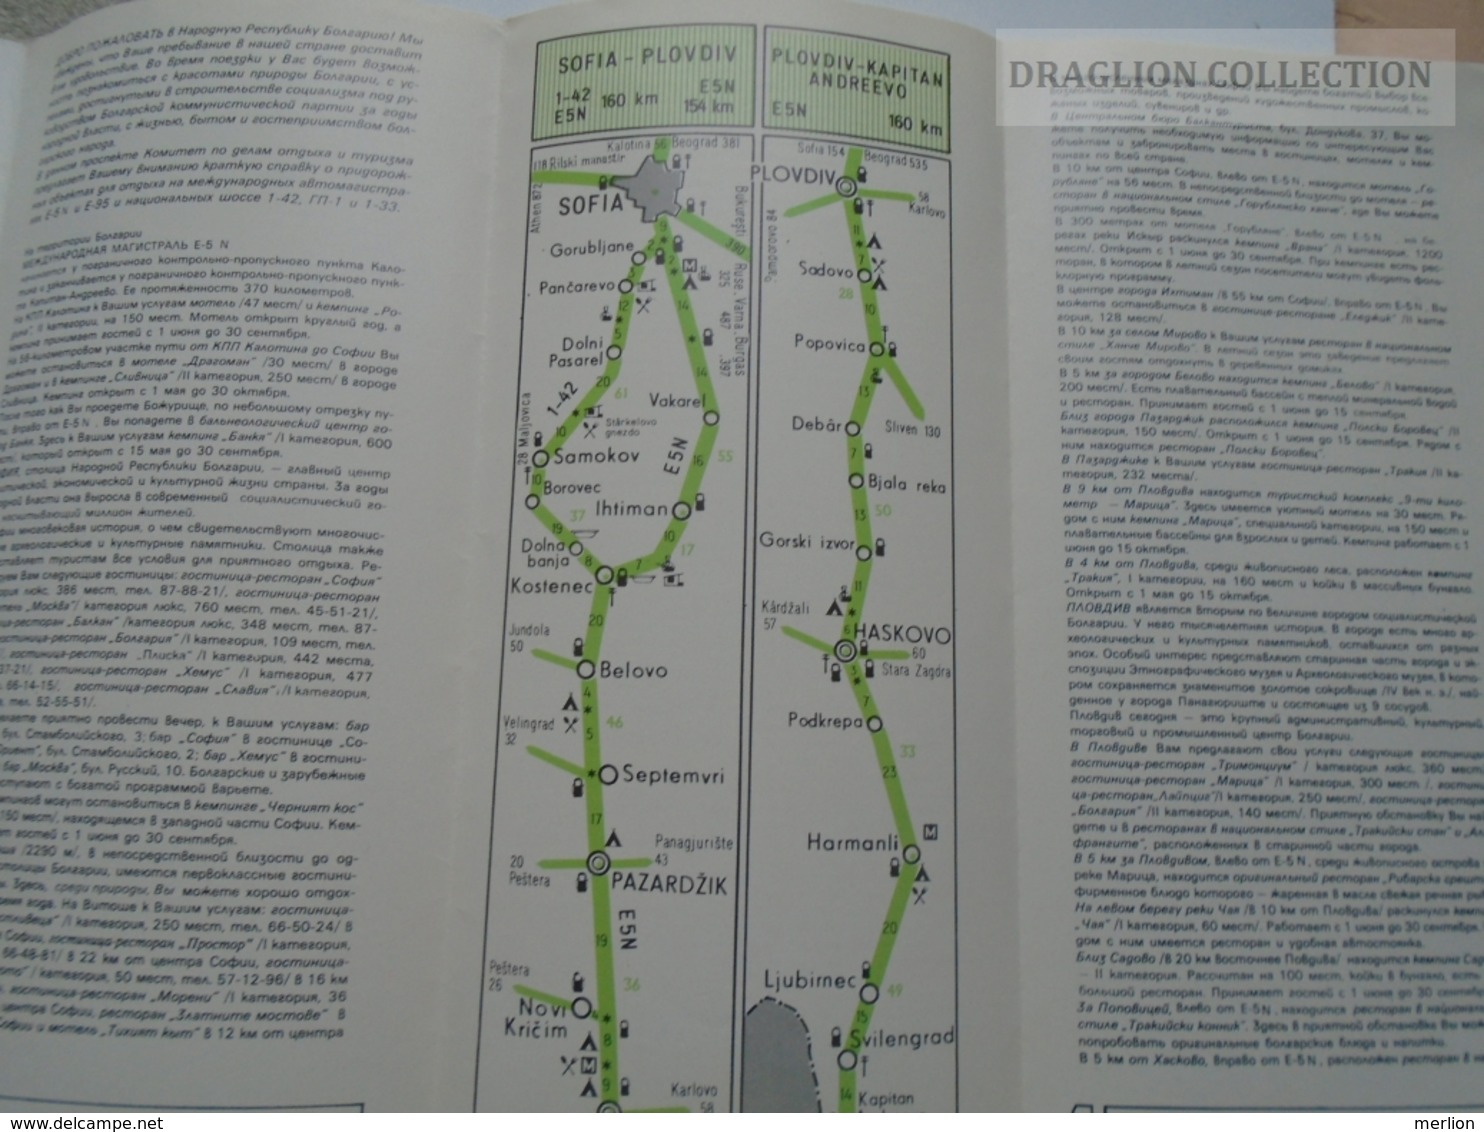 ZA155.20  BULGARIA ROAD MAPS  - MAP  Ca 1970's - Cartes Routières